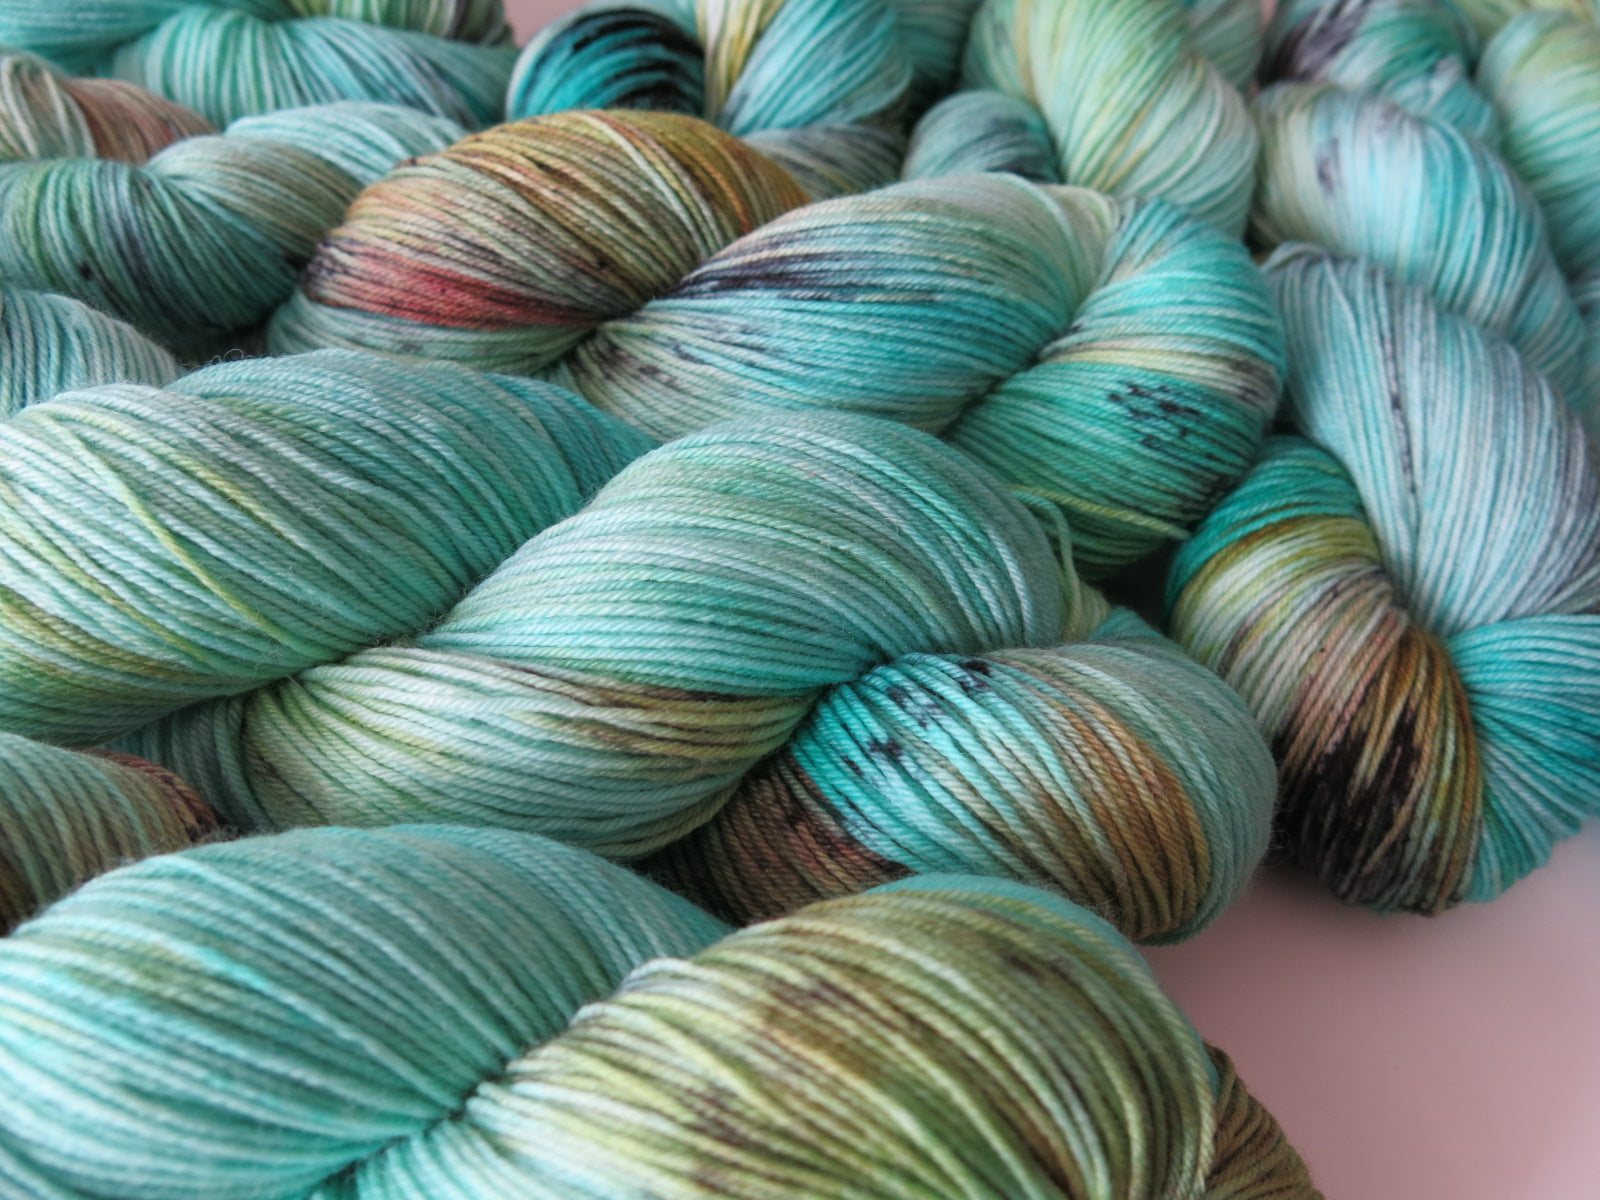 100g skeins of superwash merino and nylon sock yarn in turquoise